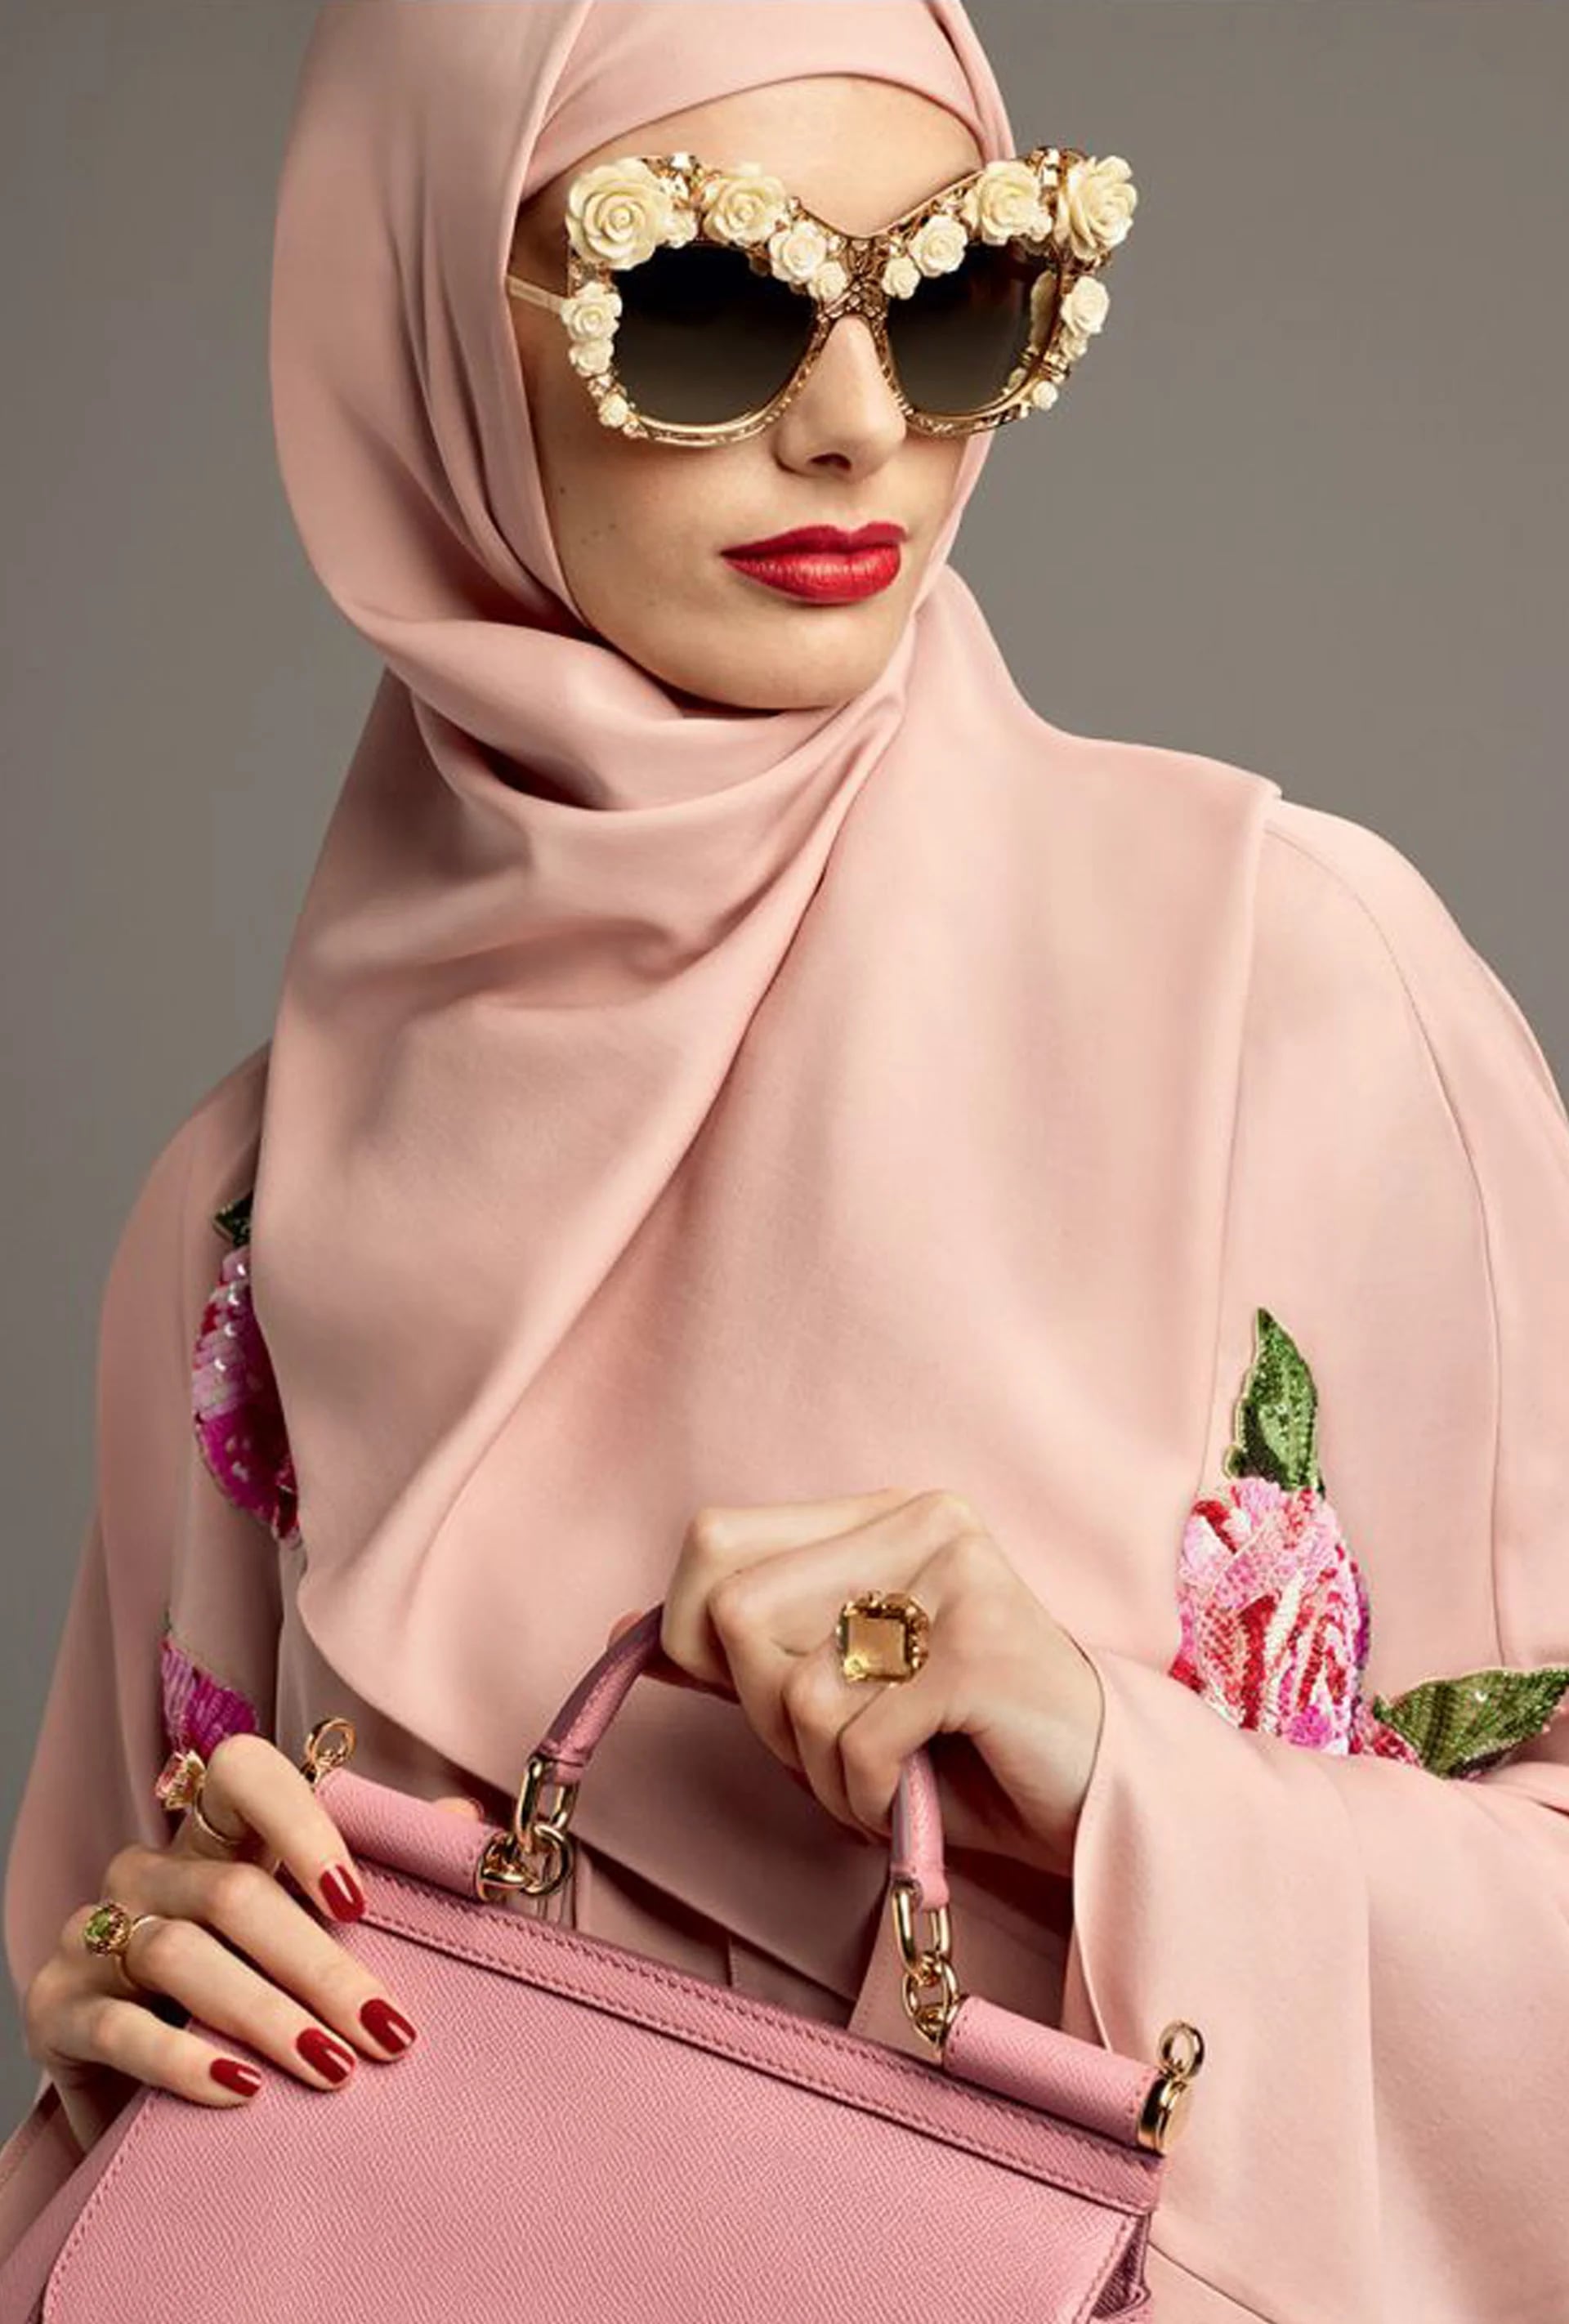 Característico de la marca, la línea eyewear con anteojos XL y apliques de flores. El velo y la túnica en rosa con bordado de flores (Vogue Arabia)